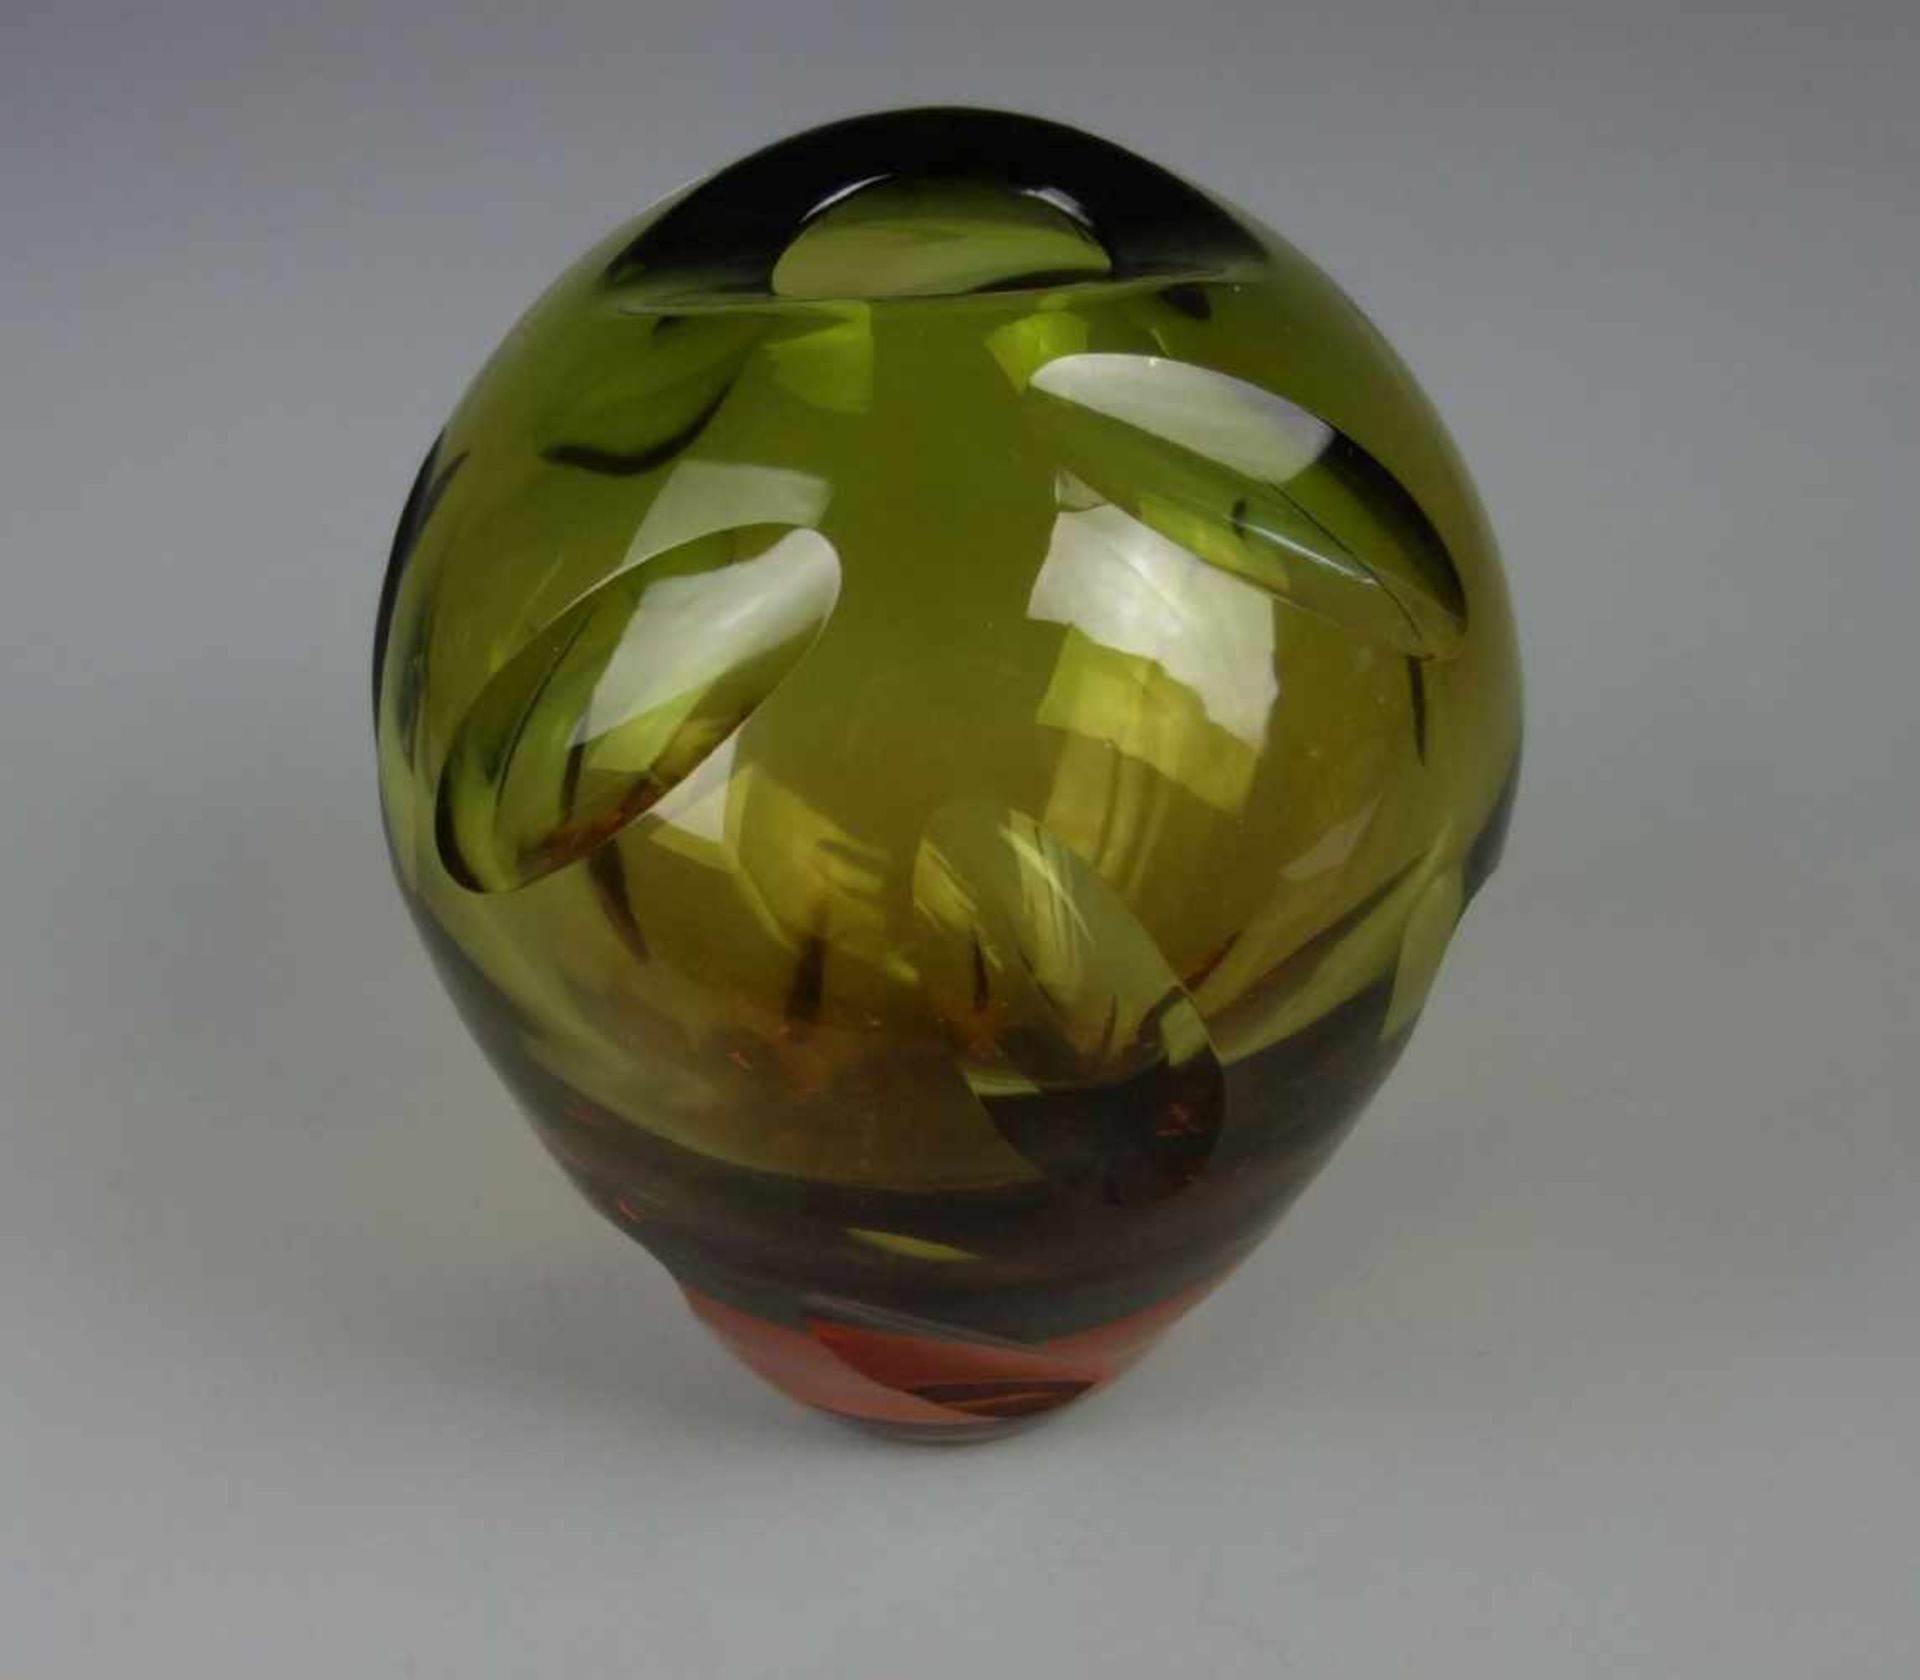 MURANO - GLASVASE, dickwandiges farbloses Glas, orange und grün unterfangen, 1960er /1970er Jahre. - Image 2 of 4